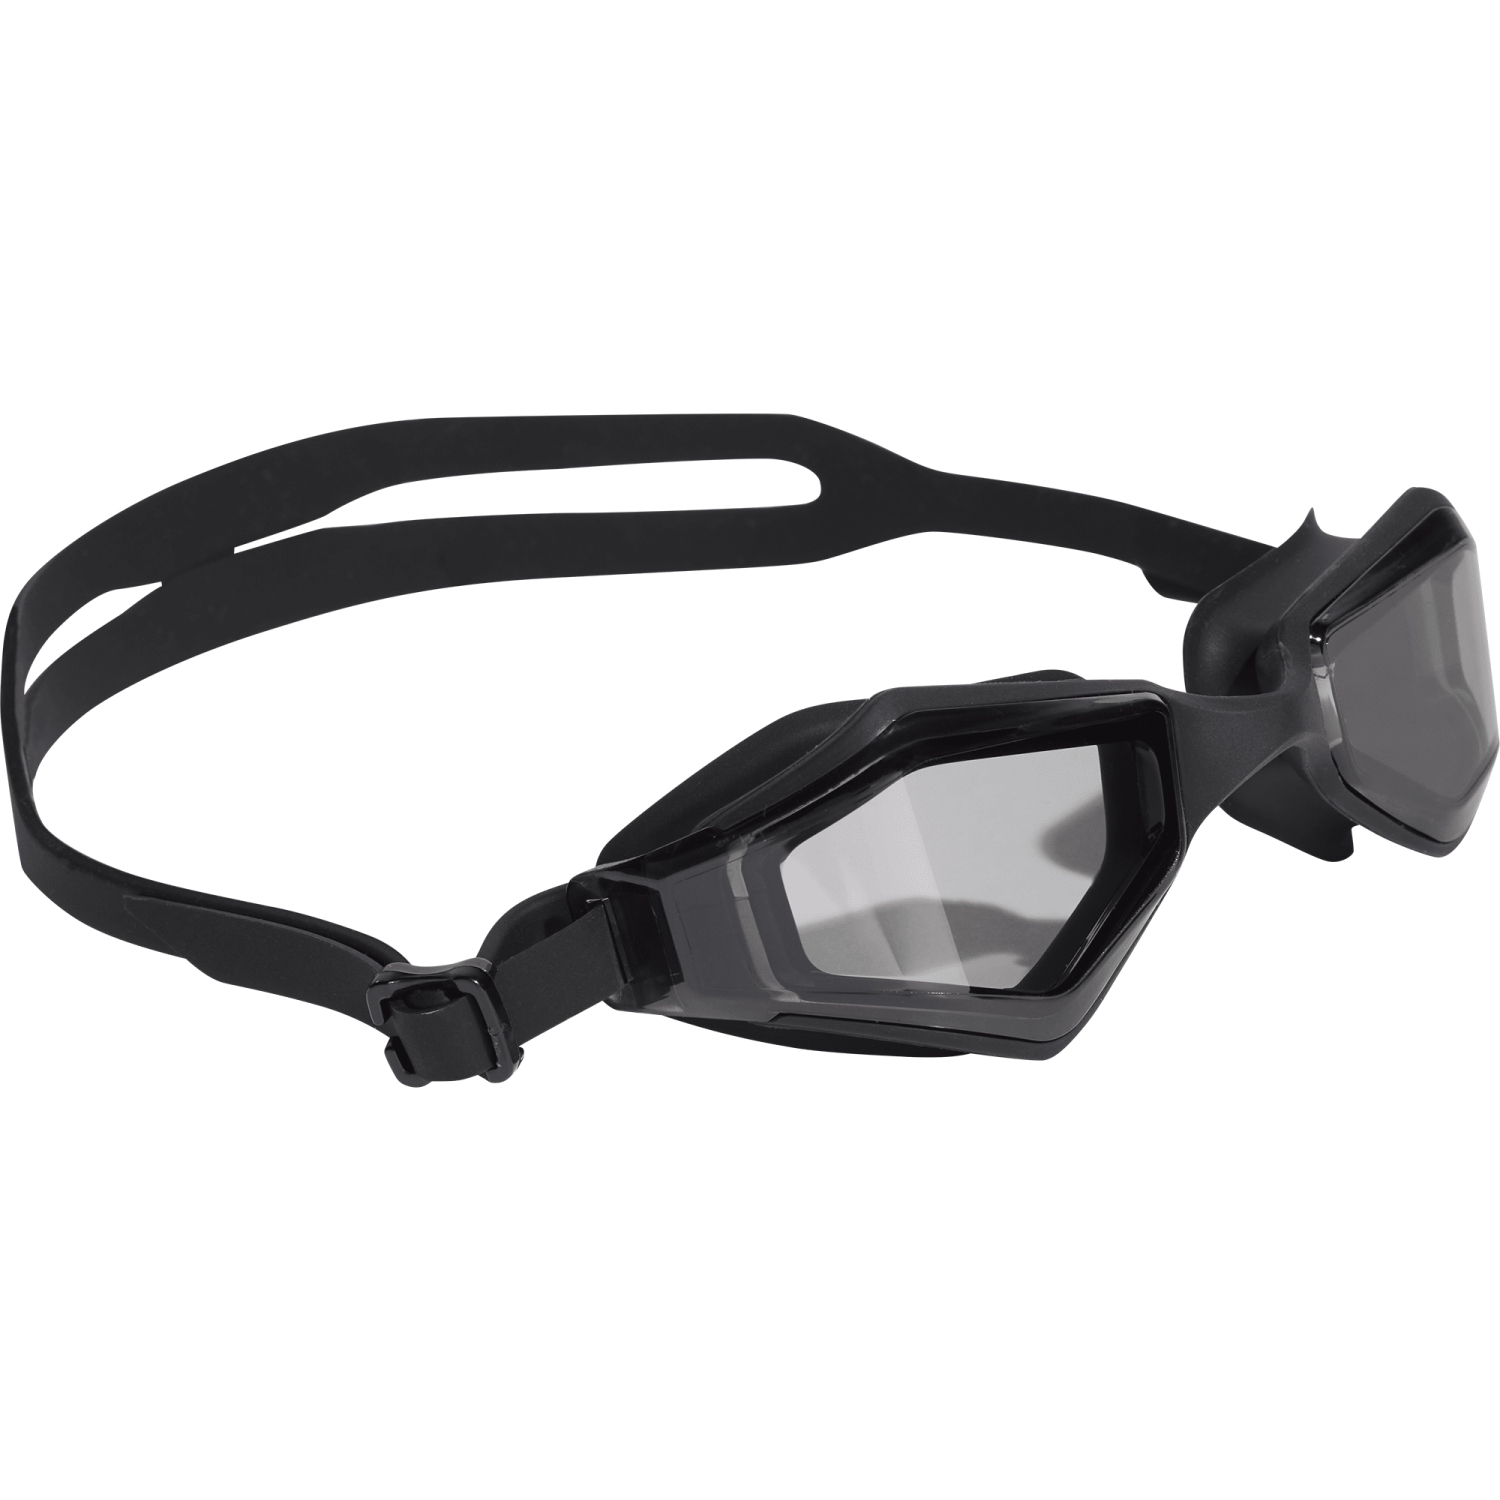 Produktbild von adidas Ripstream Soft Schwimmbrille - black/carbon IK9657 - smoke lenses